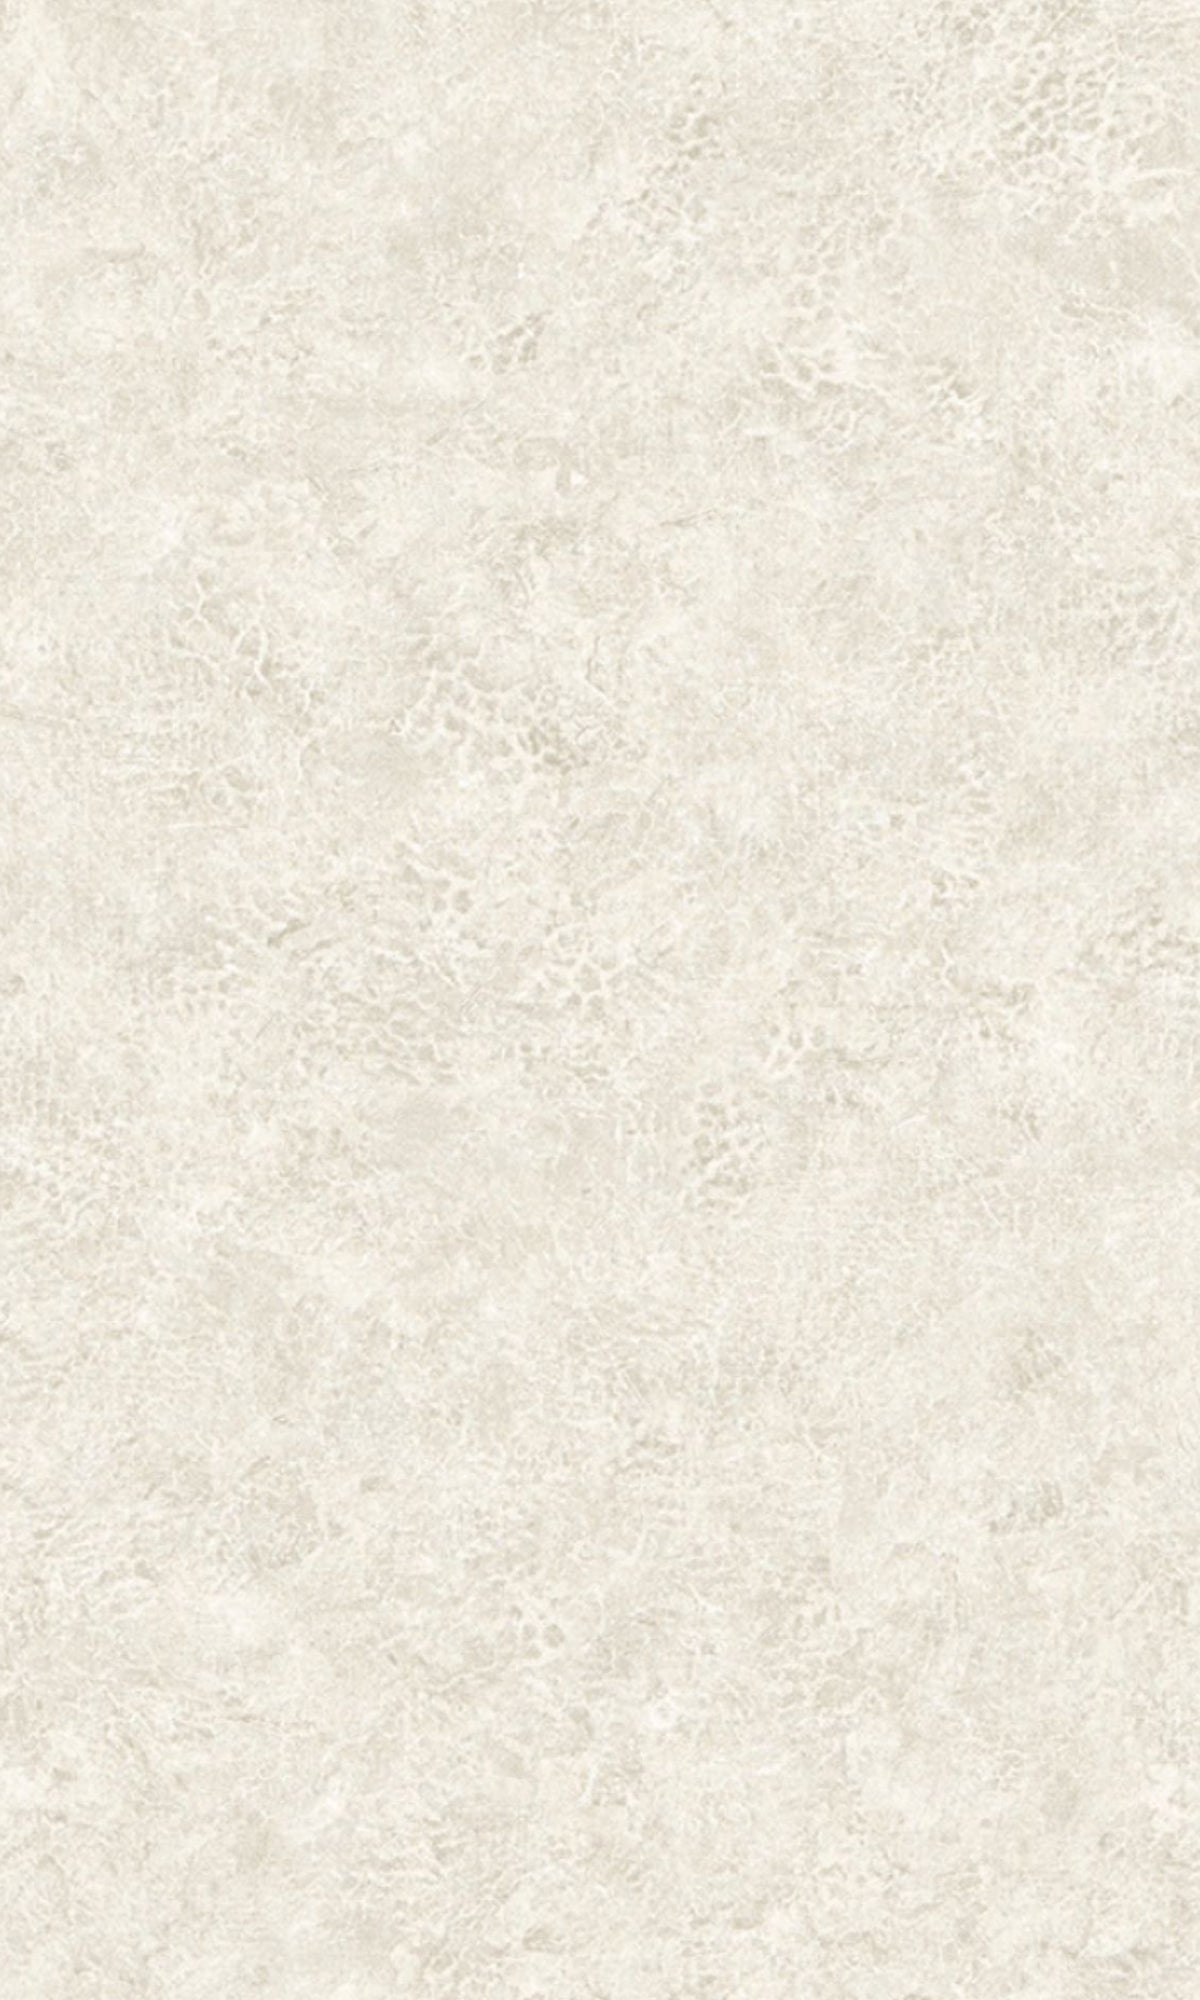 Sea Salt Leather Like Vinyl Commercial Wallpaper C7581